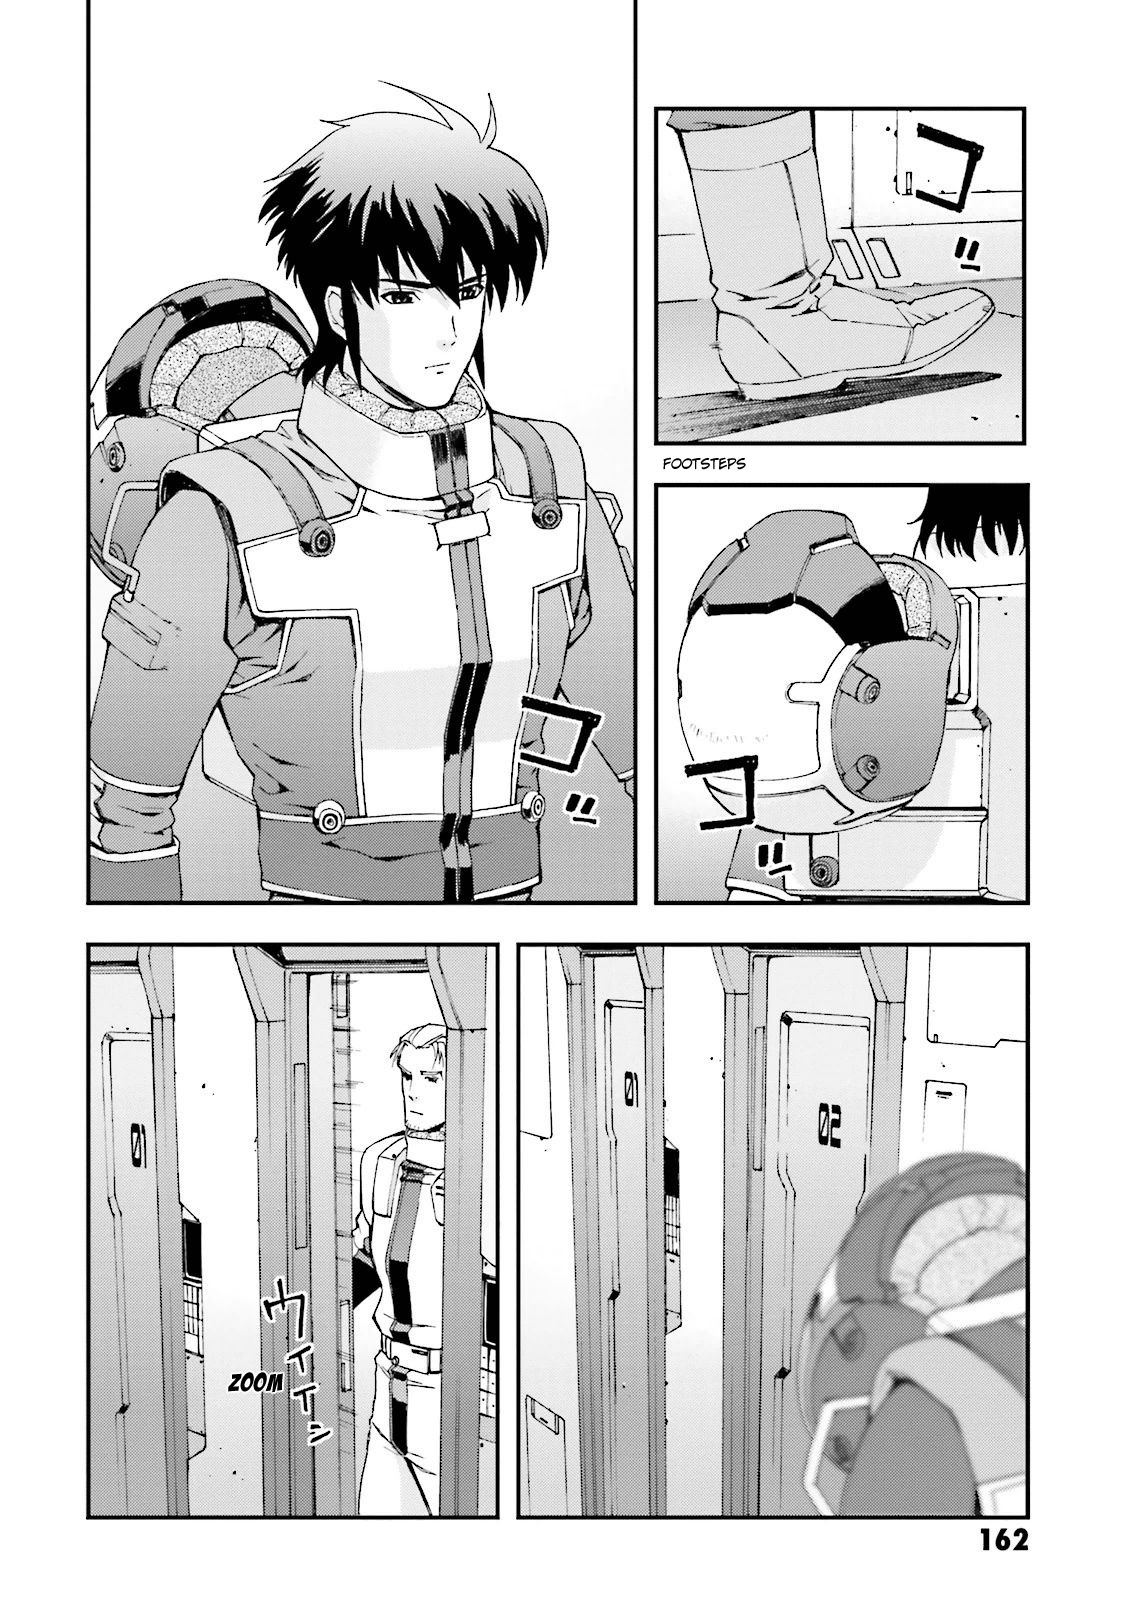 Kidou Senshi Gundam U.c. 0094 - Across The Sky Vol.4 Chapter 16: Ryude Departs - Picture 2